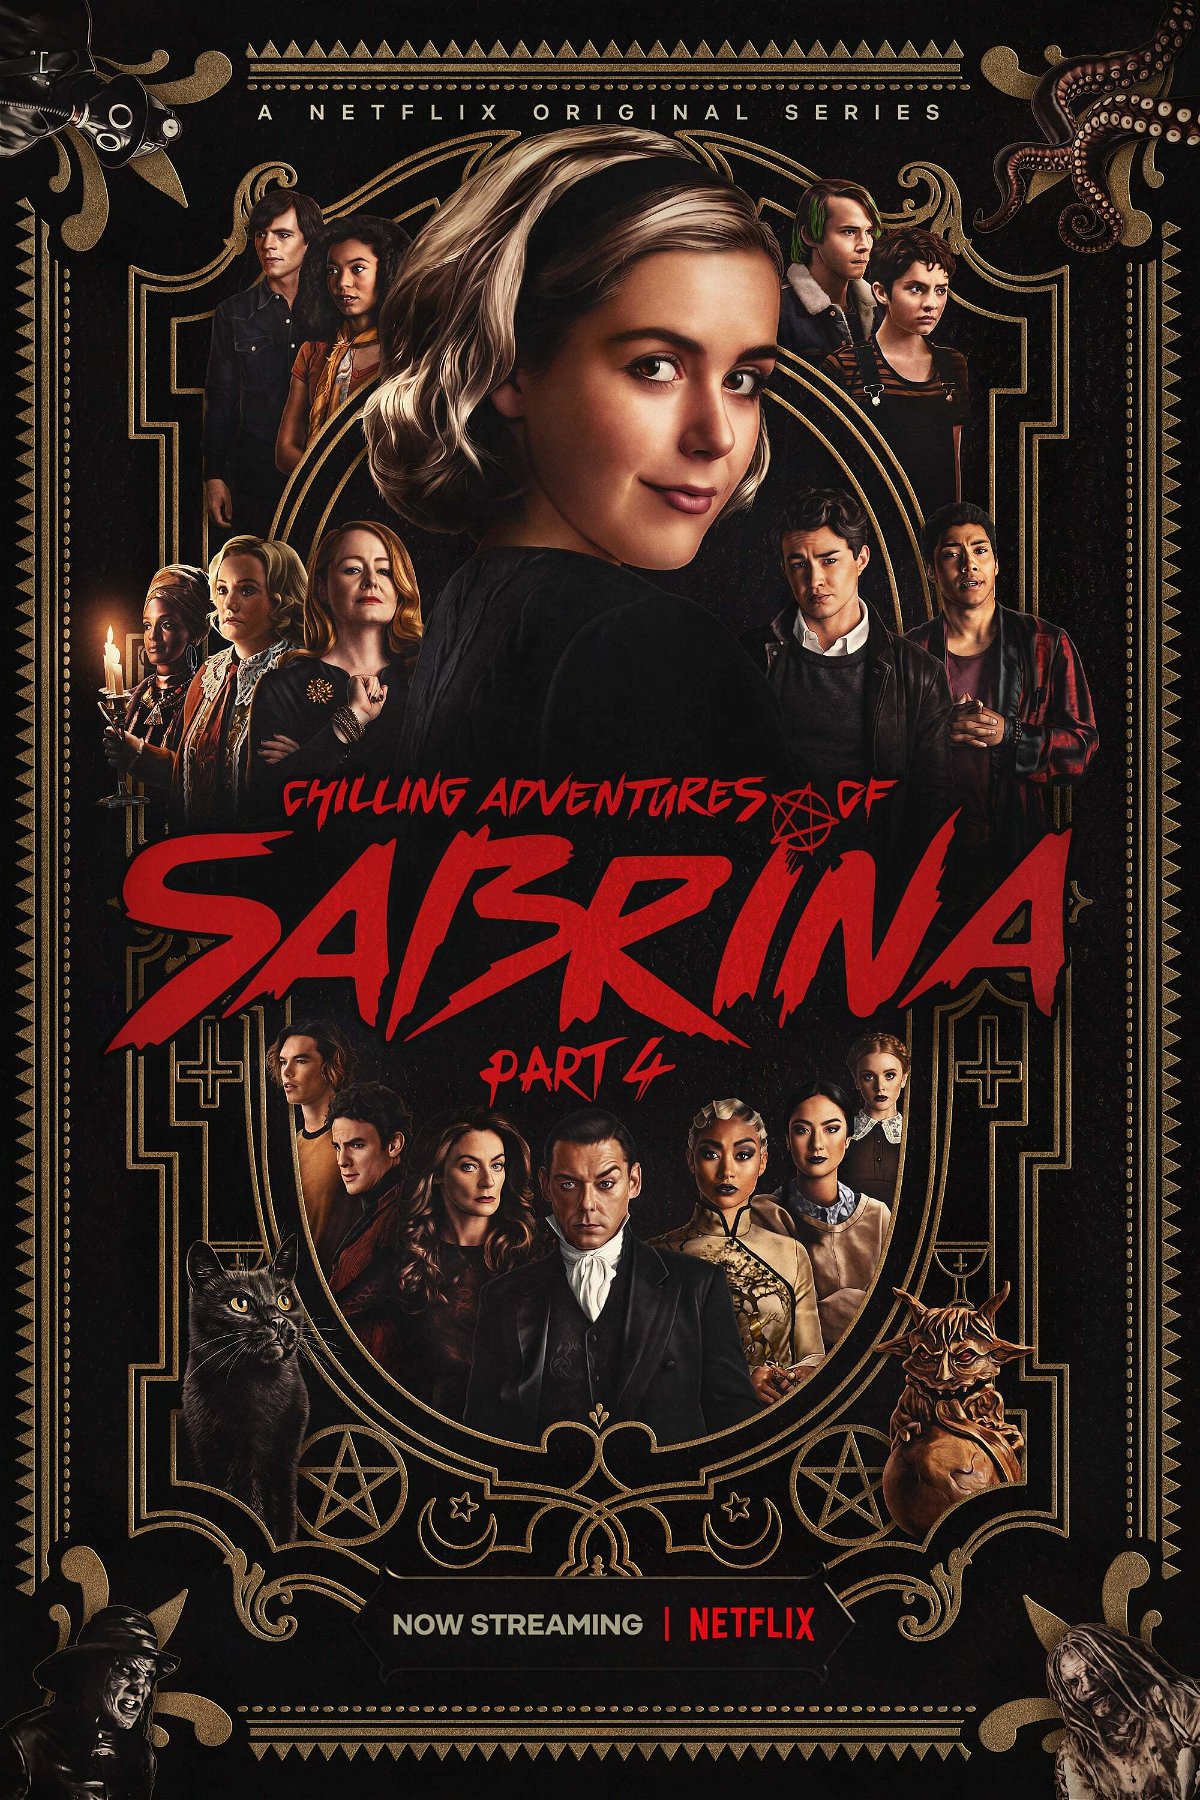 Le terrificanti avventure di Sabrina, il poster della quarta parte